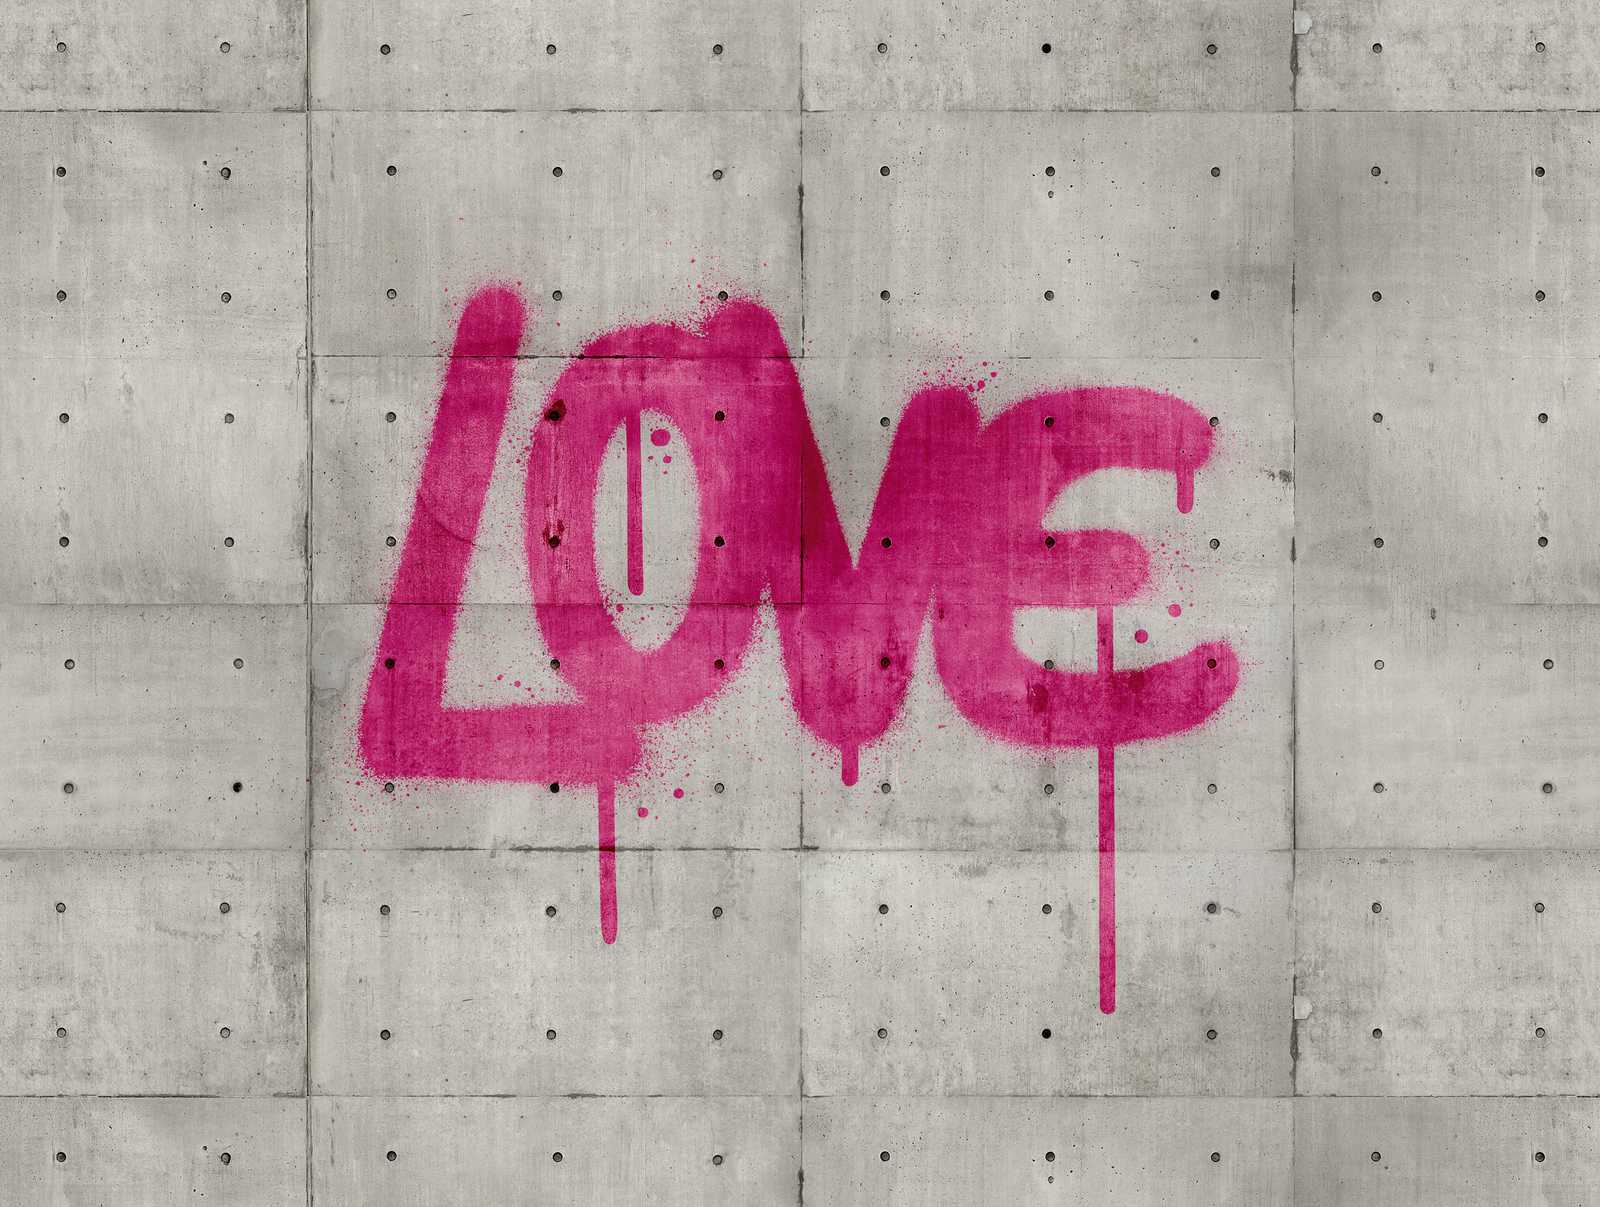             Carta da parati novità - Carta da parati motivo cemento LOVE graffiti, grigio e rosa
        